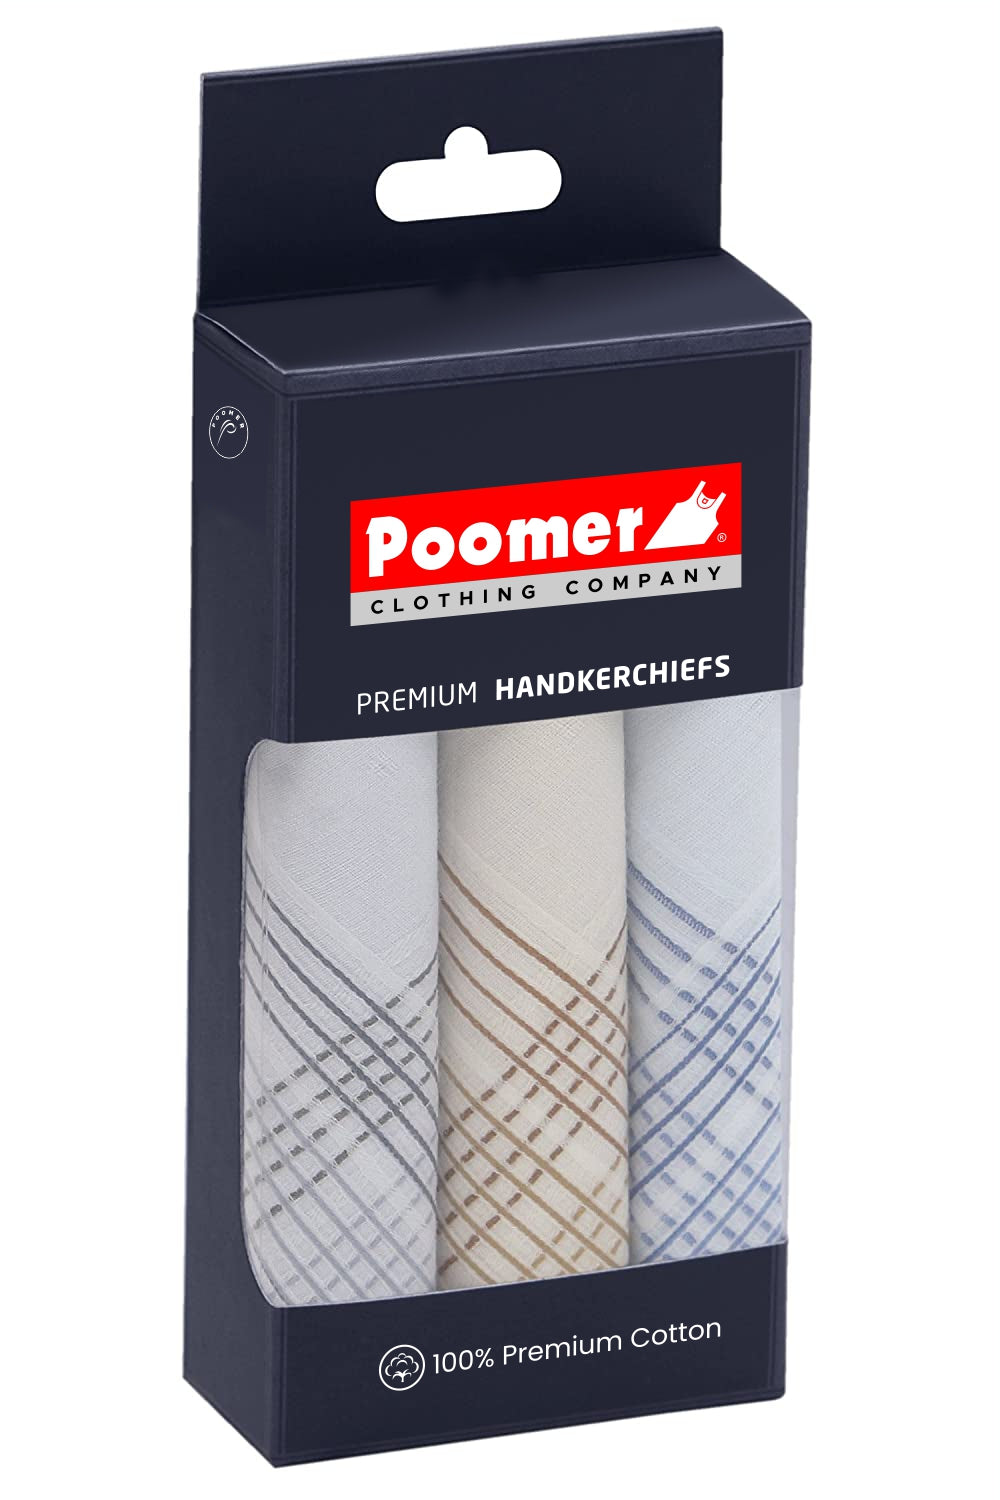 Poomer Handkerchief Premium - Dark Colour